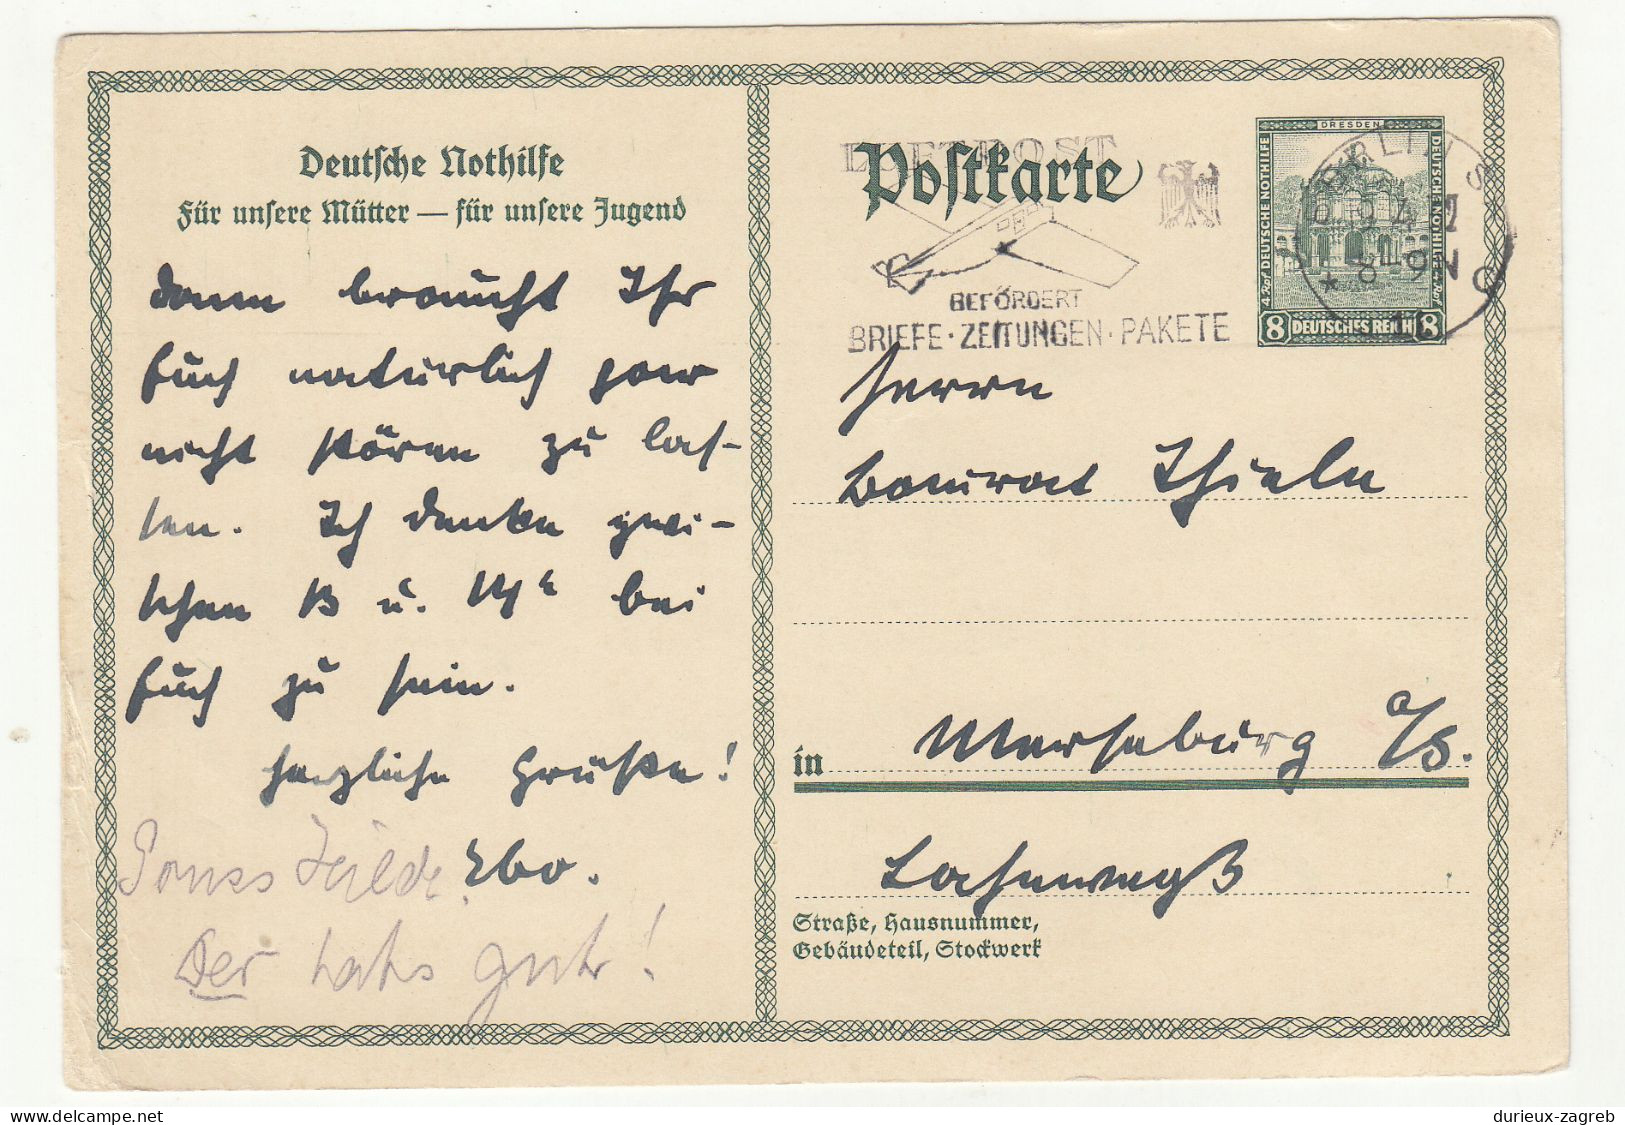 Germany Deutsche Nothilfe Postal Stationery Postcard Posted 1932 - Luftpost Slogan Postmark B240401 - Postkarten